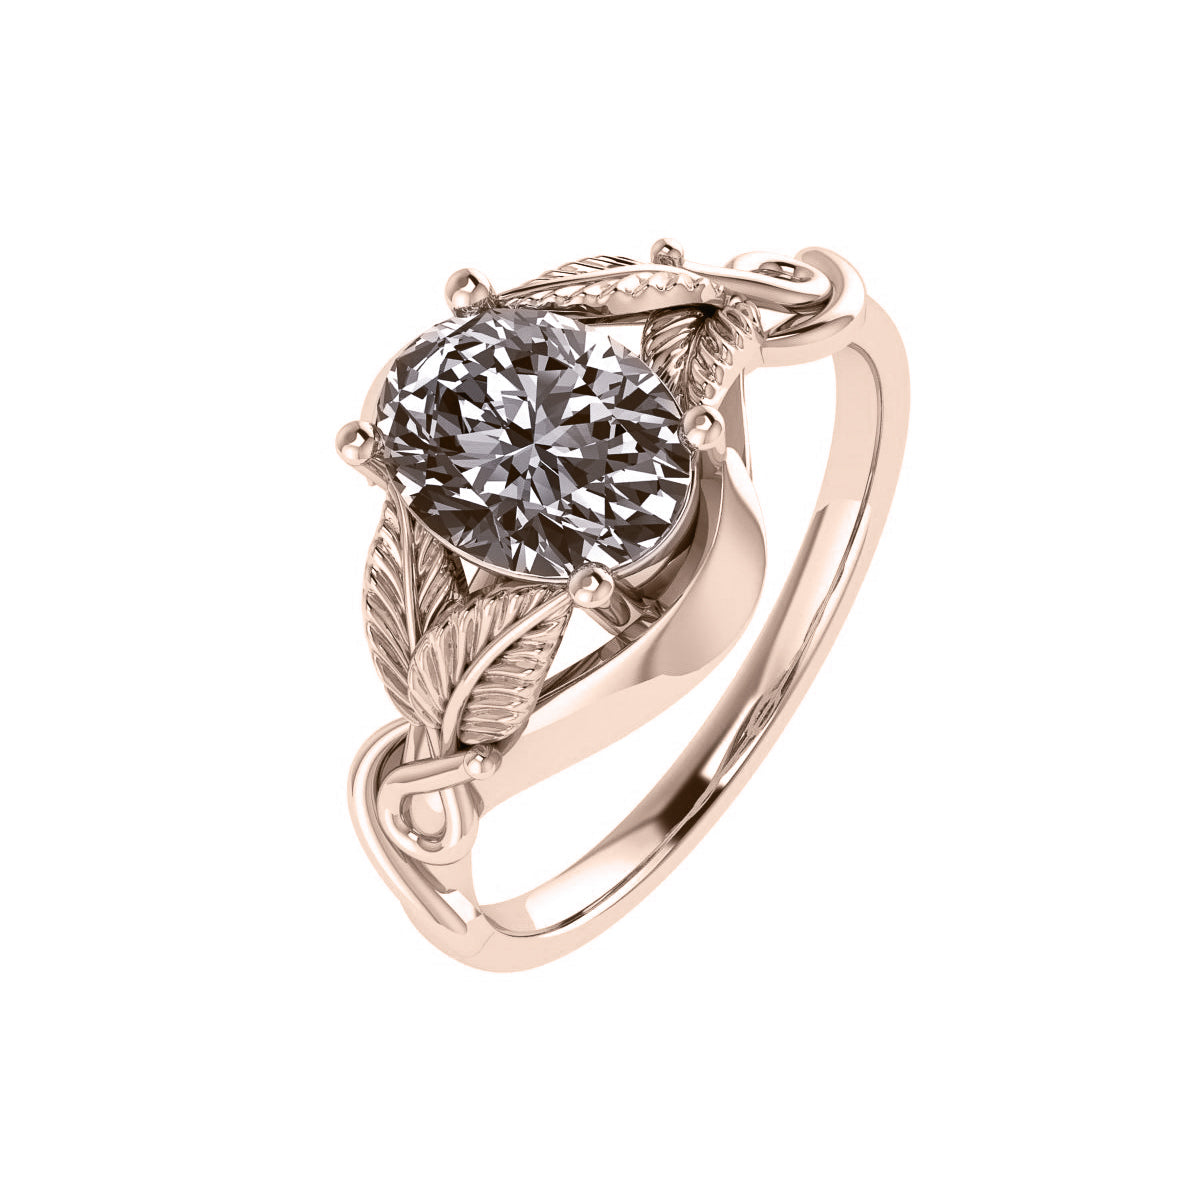 Azalea | custom engagement ring setting for oval gemstone 8x6 mm - Eden Garden Jewelry™